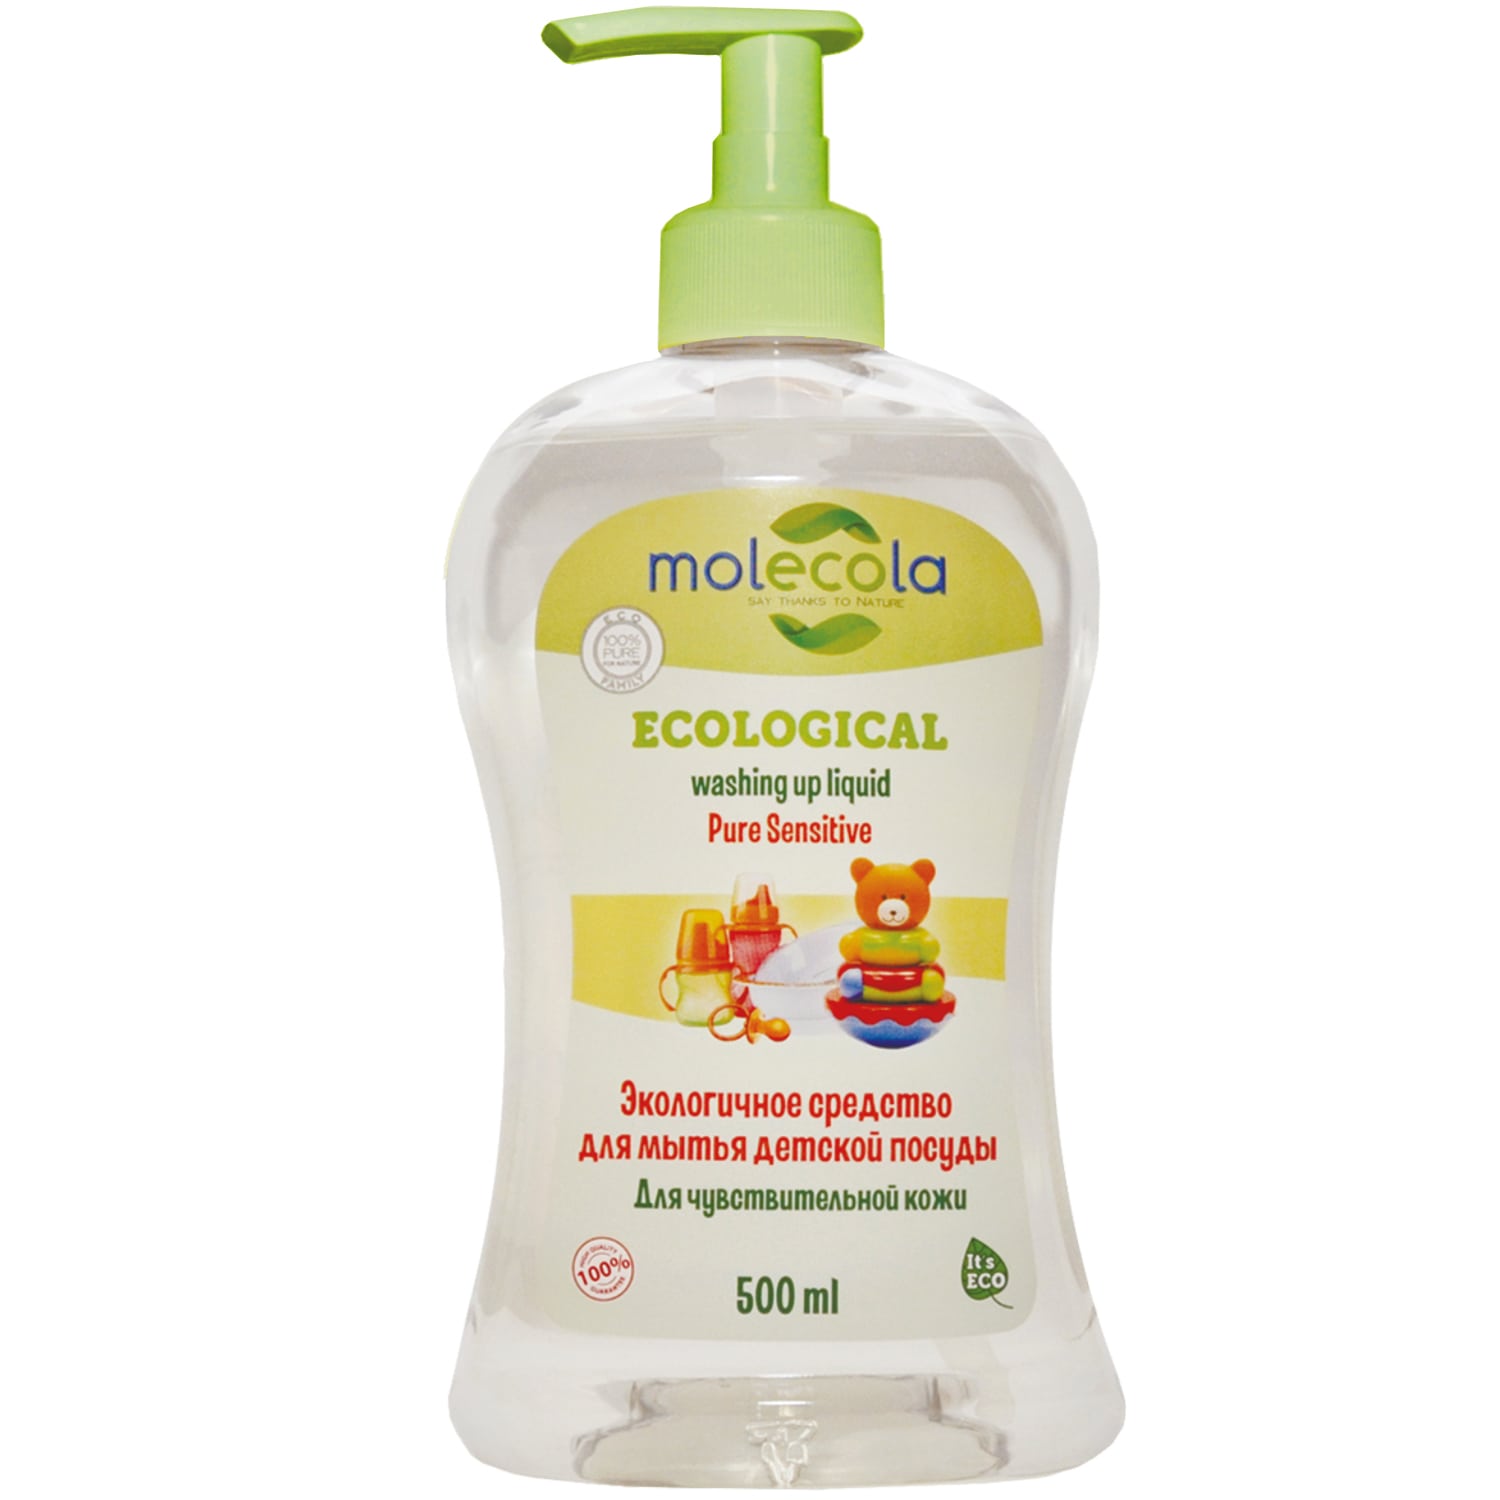 Molecola Средство для мытья детской посуды для чувствительной кожи, экологическое, 500 мл (Molecola, Детская серия) средство для мытья посуды экологичное molecola для чувствительной кожи 500 мл